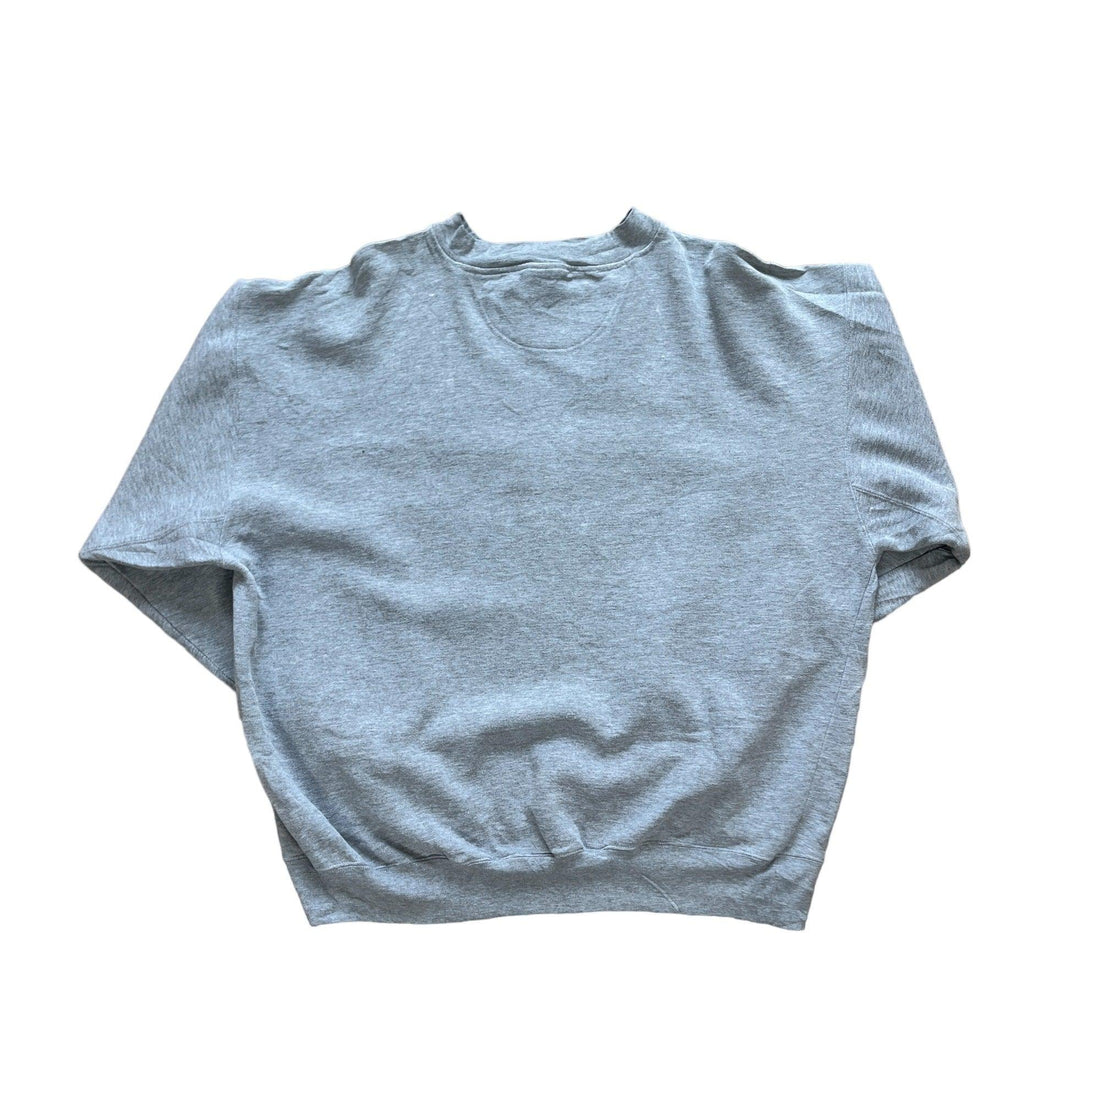 Vintage Grey Pittsburgh Steelers Sweatshirt - Extra Large - The Streetwear Studio